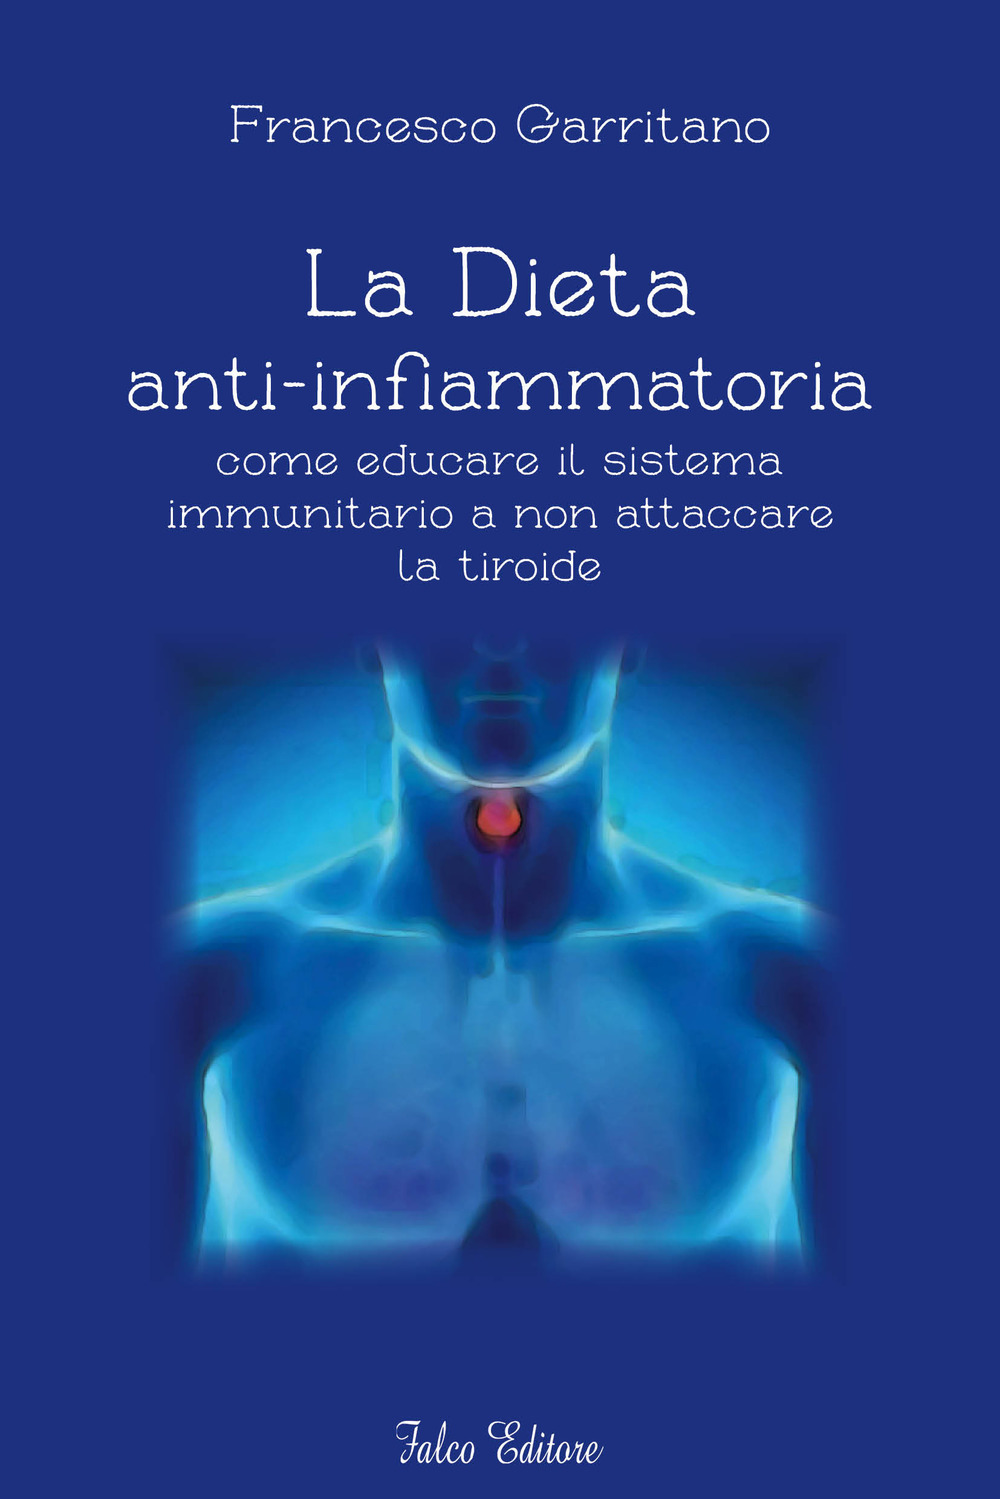 La dieta anti-infiammatoria come ducare il sistema immunitario a non attaccare la tiroide